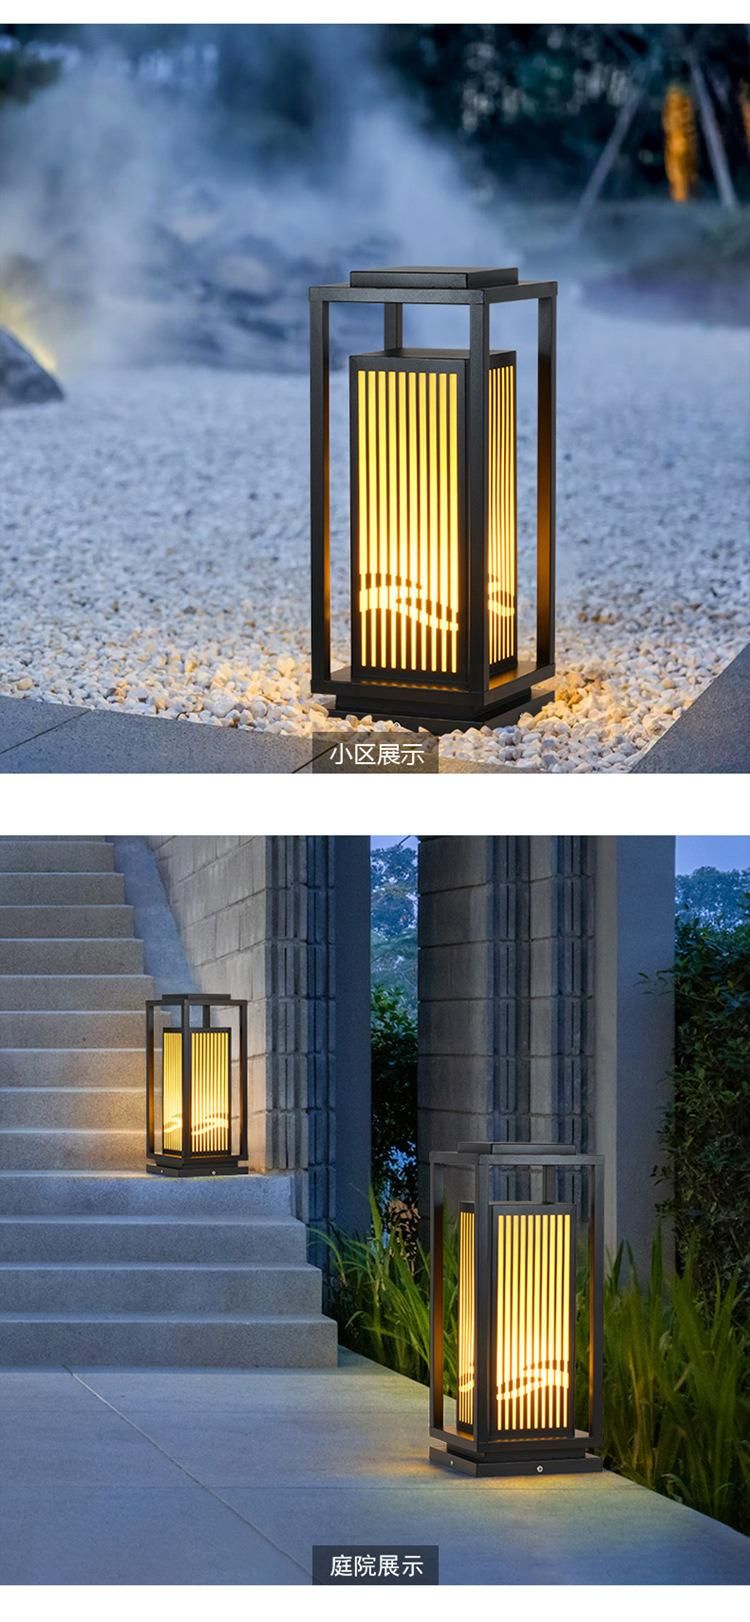 Project Outdoor Landscape Lighting LED Garden Light New Design LED Decoration Light